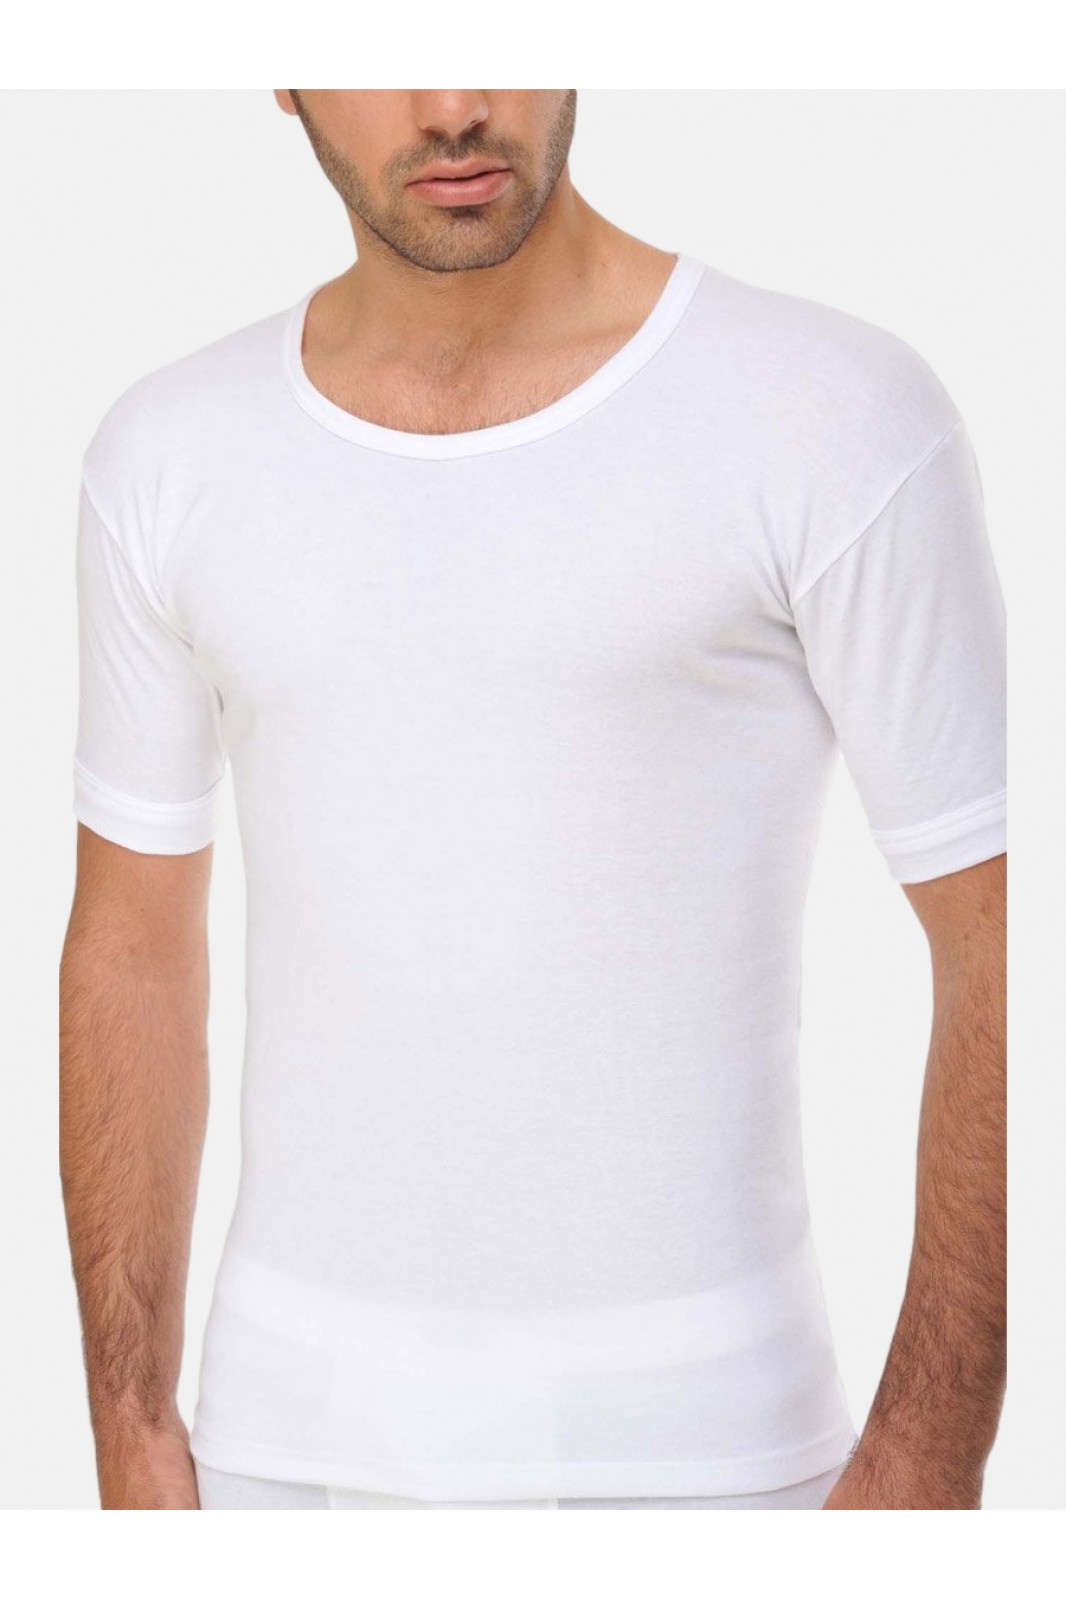 Open neck T Shirt GIORGIO White Special Offer